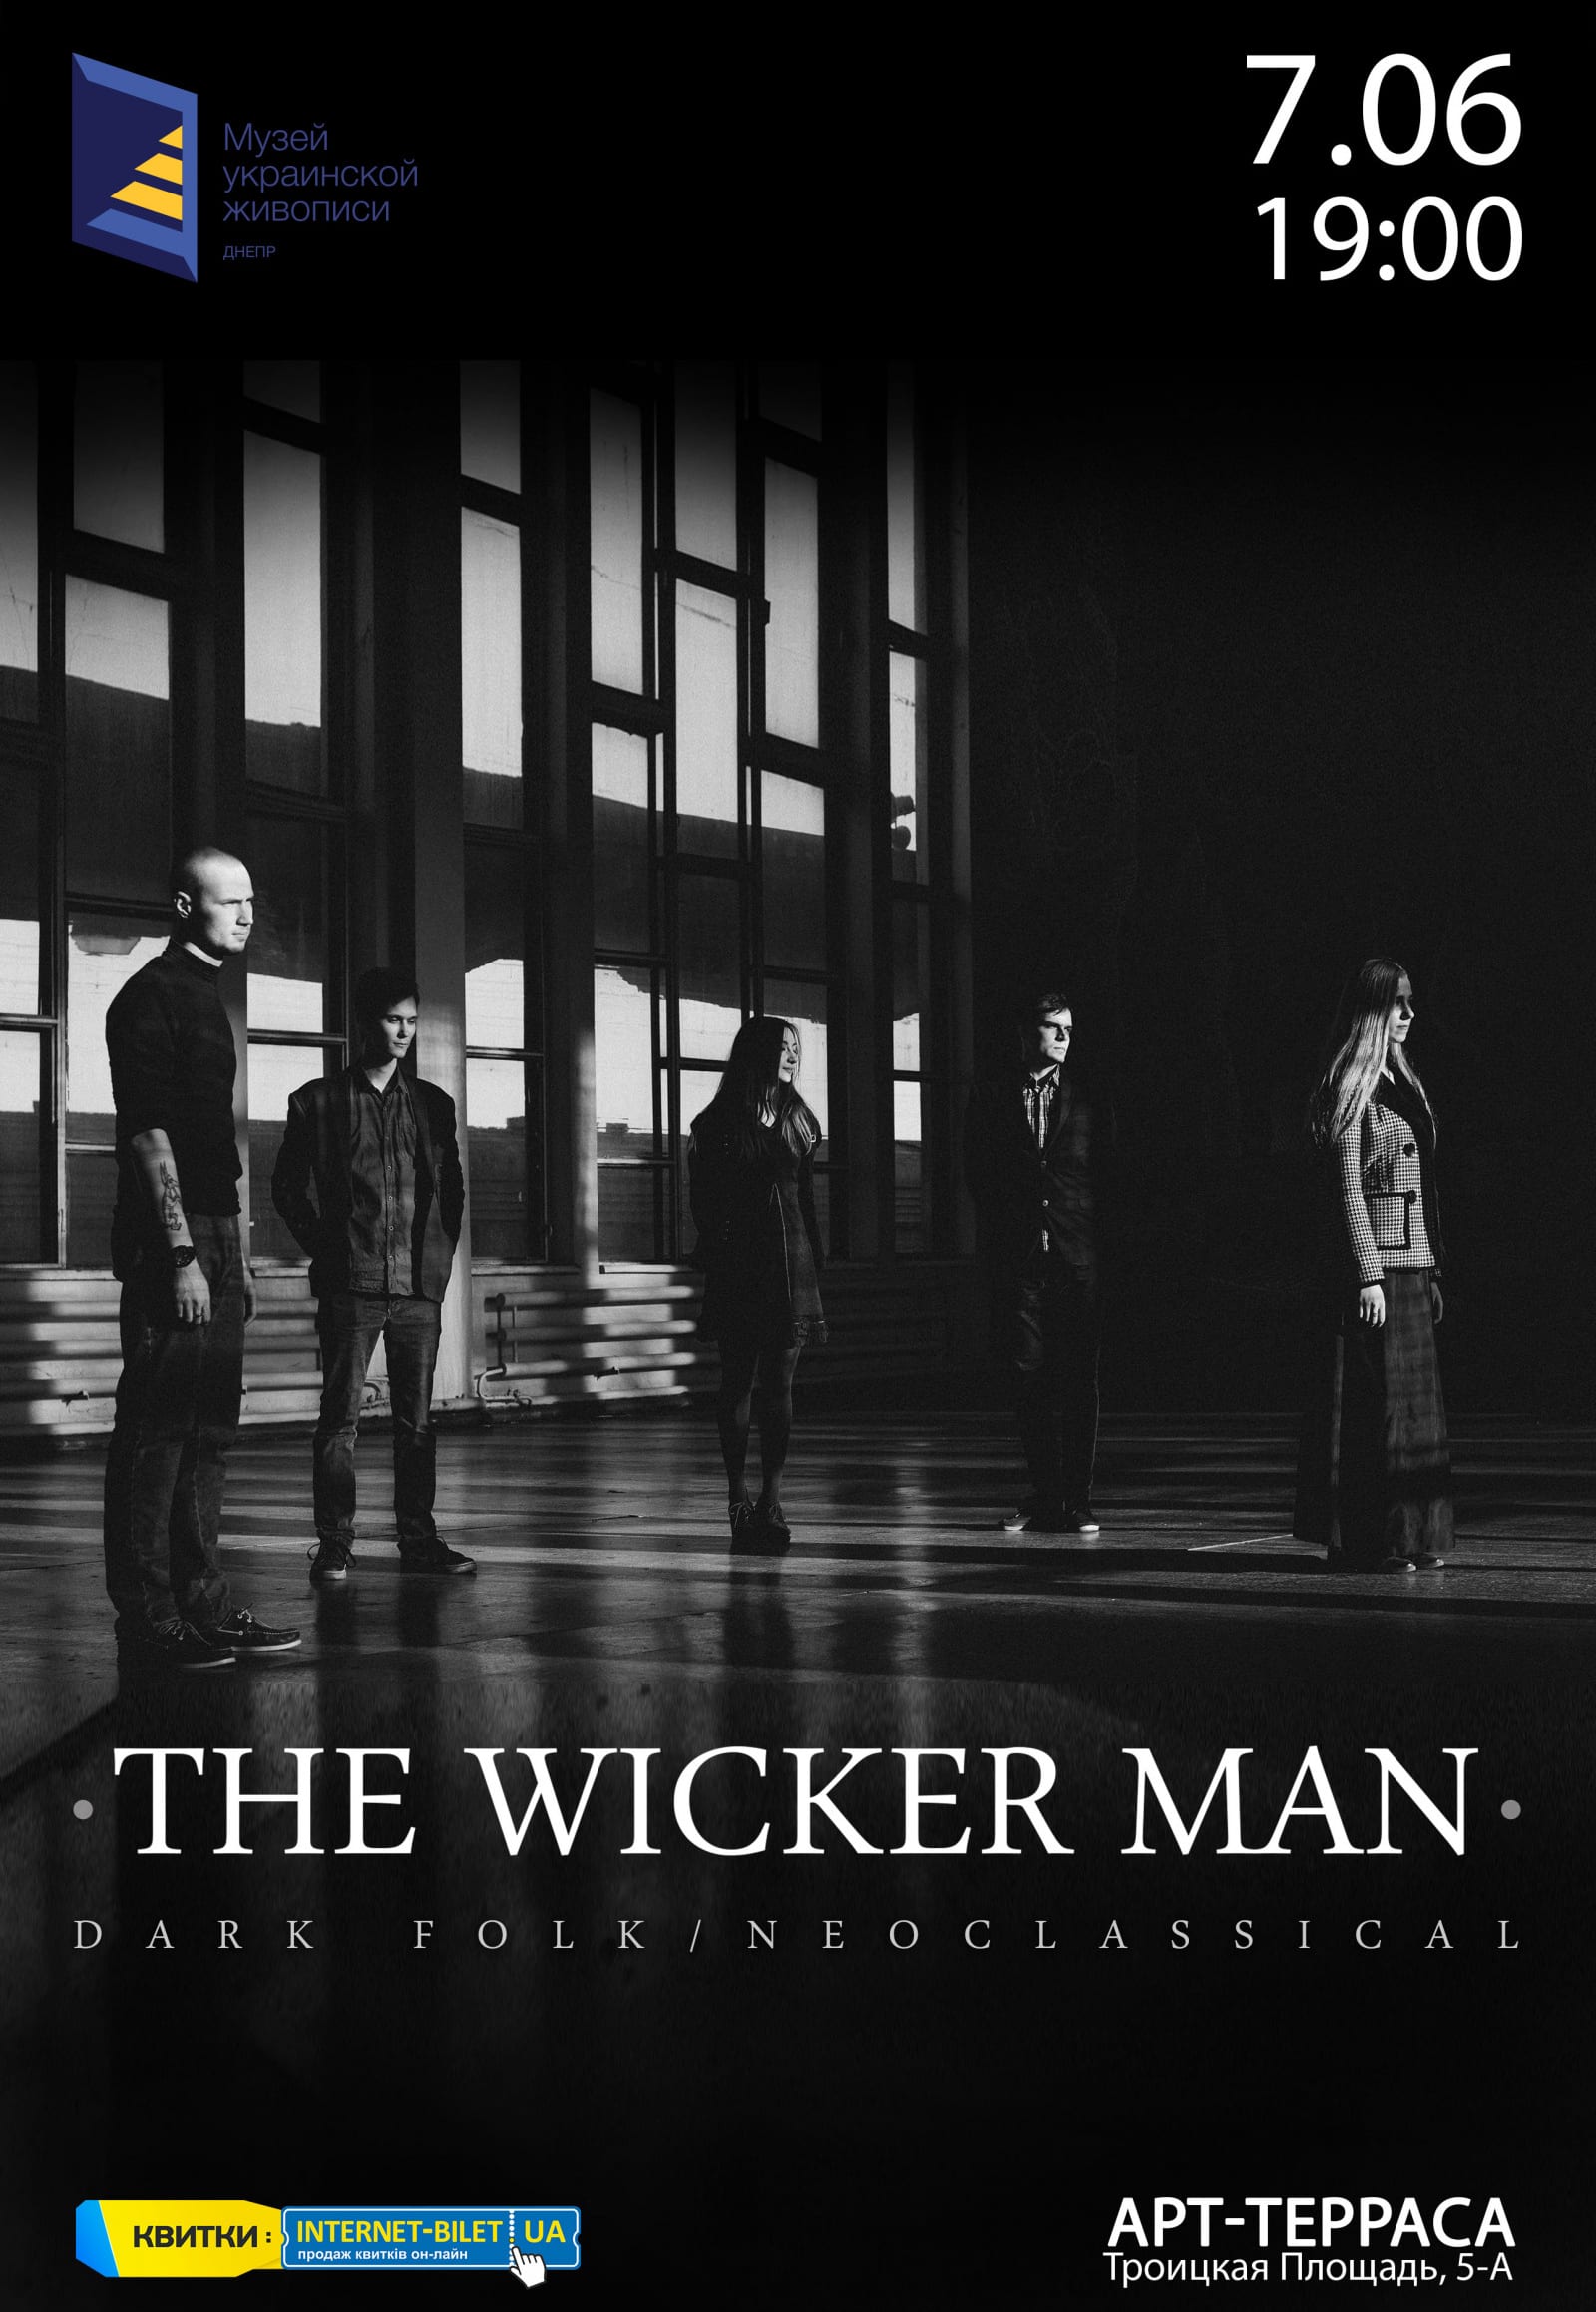 The Wicker Man Днепр, 07.06.2019, цена, купить билеты. Афиша Днепра